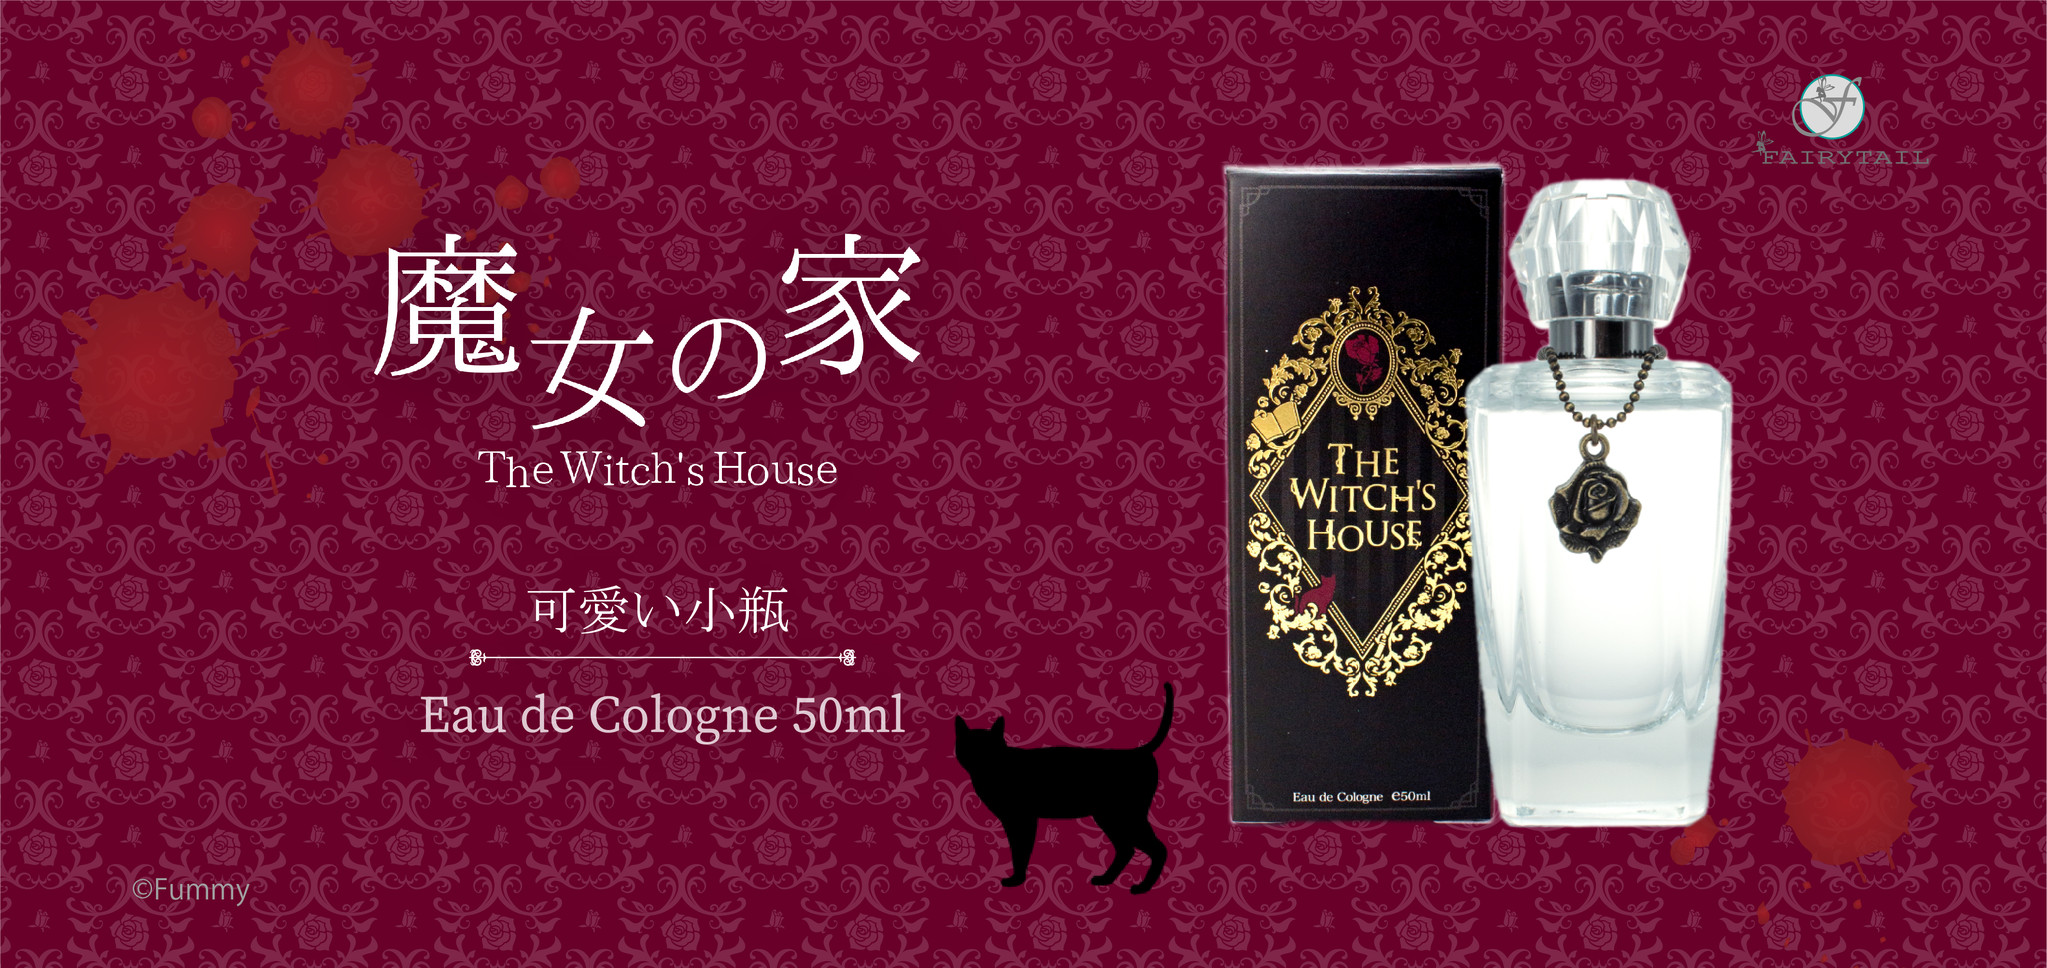 フリーホラーゲーム 魔女の家 に登場するアイテム 可愛い小瓶 をイメージした香水が11月28日 土 発売 フェアリーテイル株式会社のプレスリリース